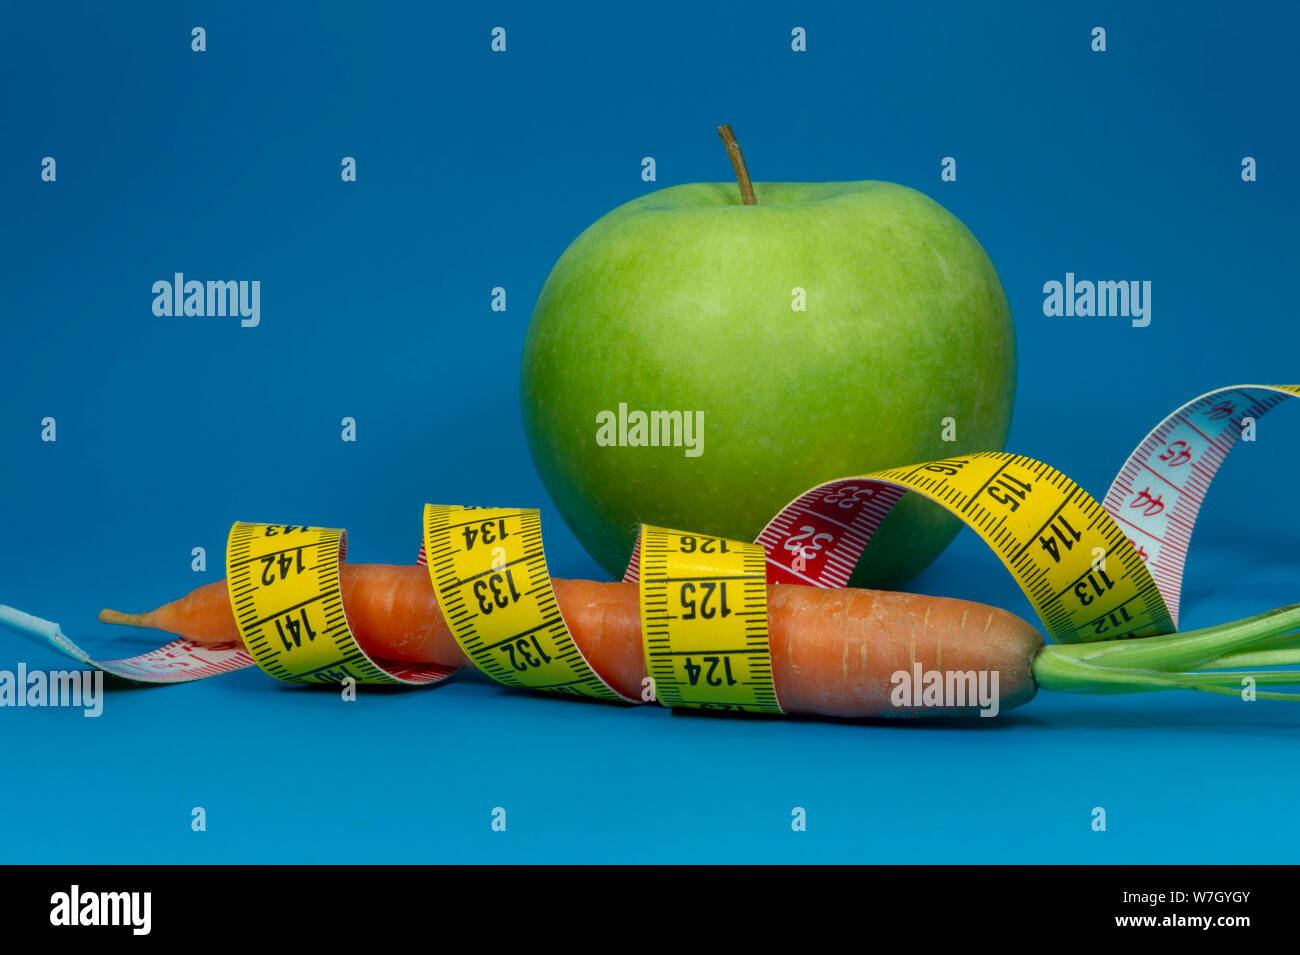 La perte de poids et régime alimentaire sain concept avec un ruban à mesurer, de carotte et de pomme verte sur fond bleu Banque D'Images